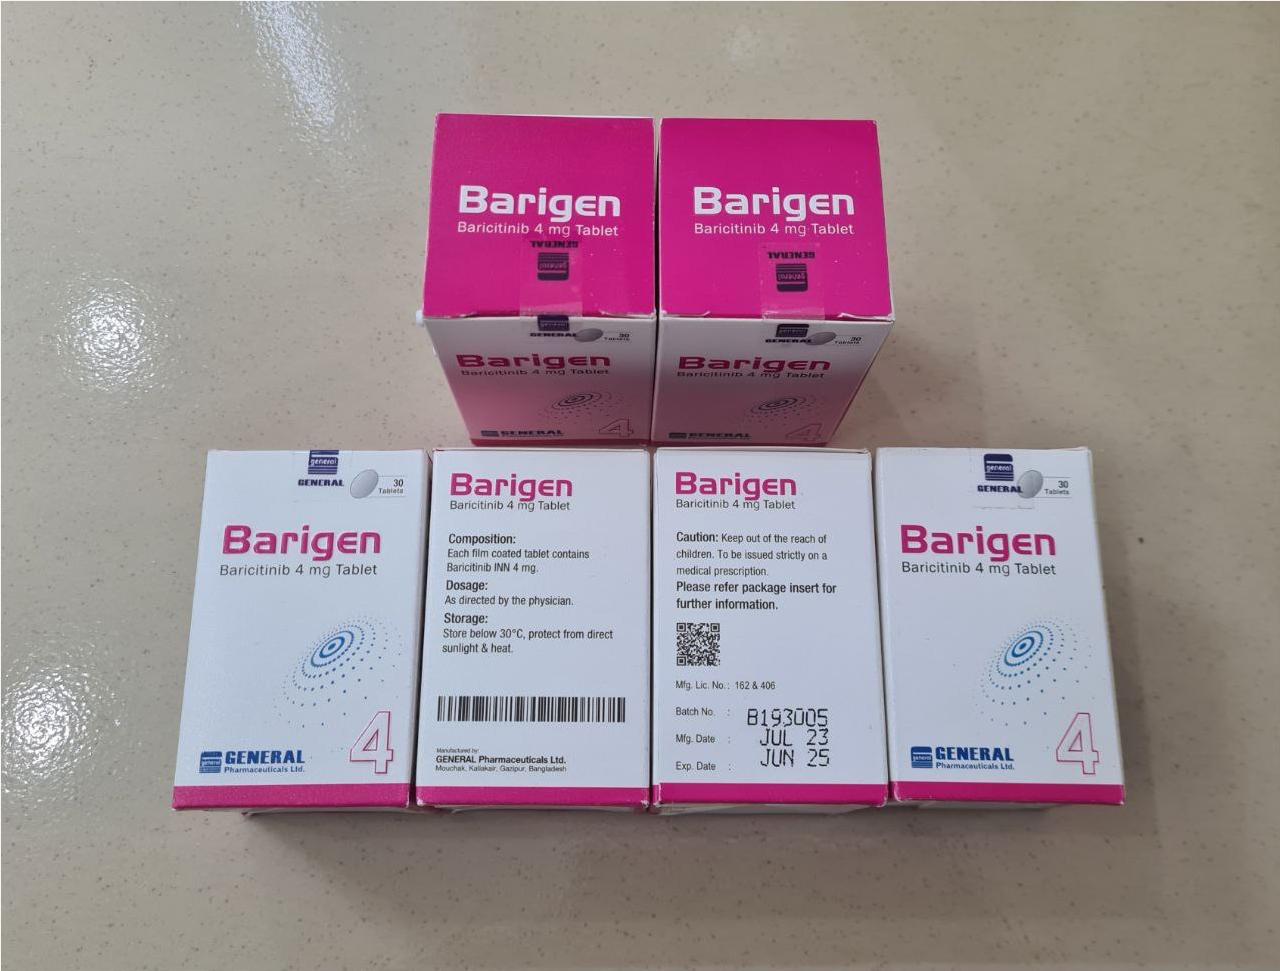 Thuốc Barigen Baricitinib 4mg giá bao nhiêu mua ở đâu?